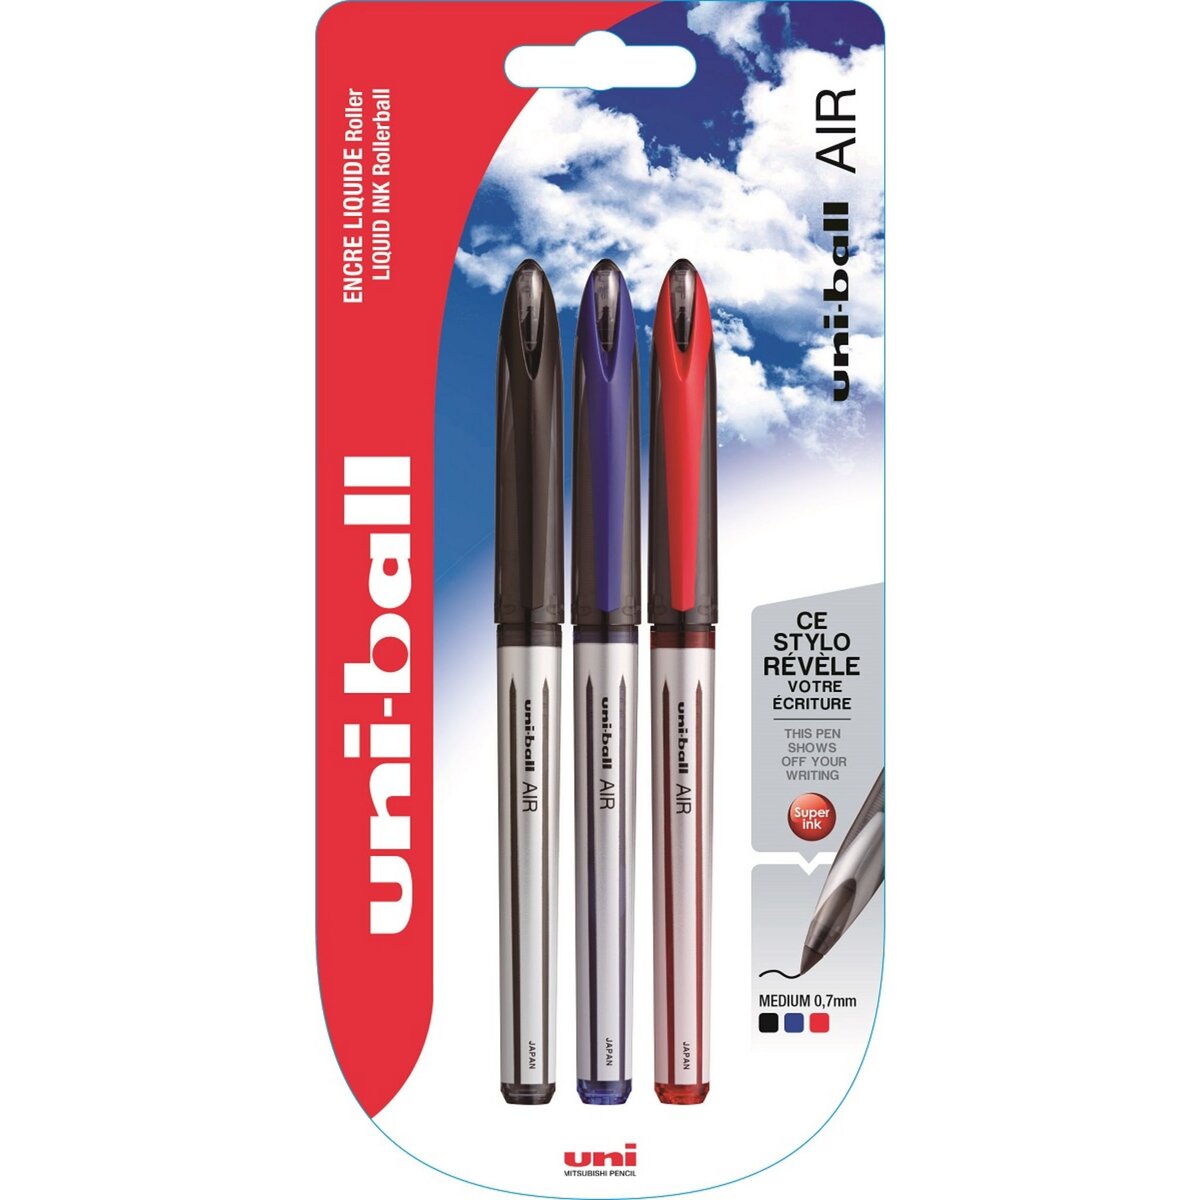 UNI BALL Lot de 3 stylos feutres Roller Uni Ball Air pointe 0.8mm - Noir, Bleu, Rouge